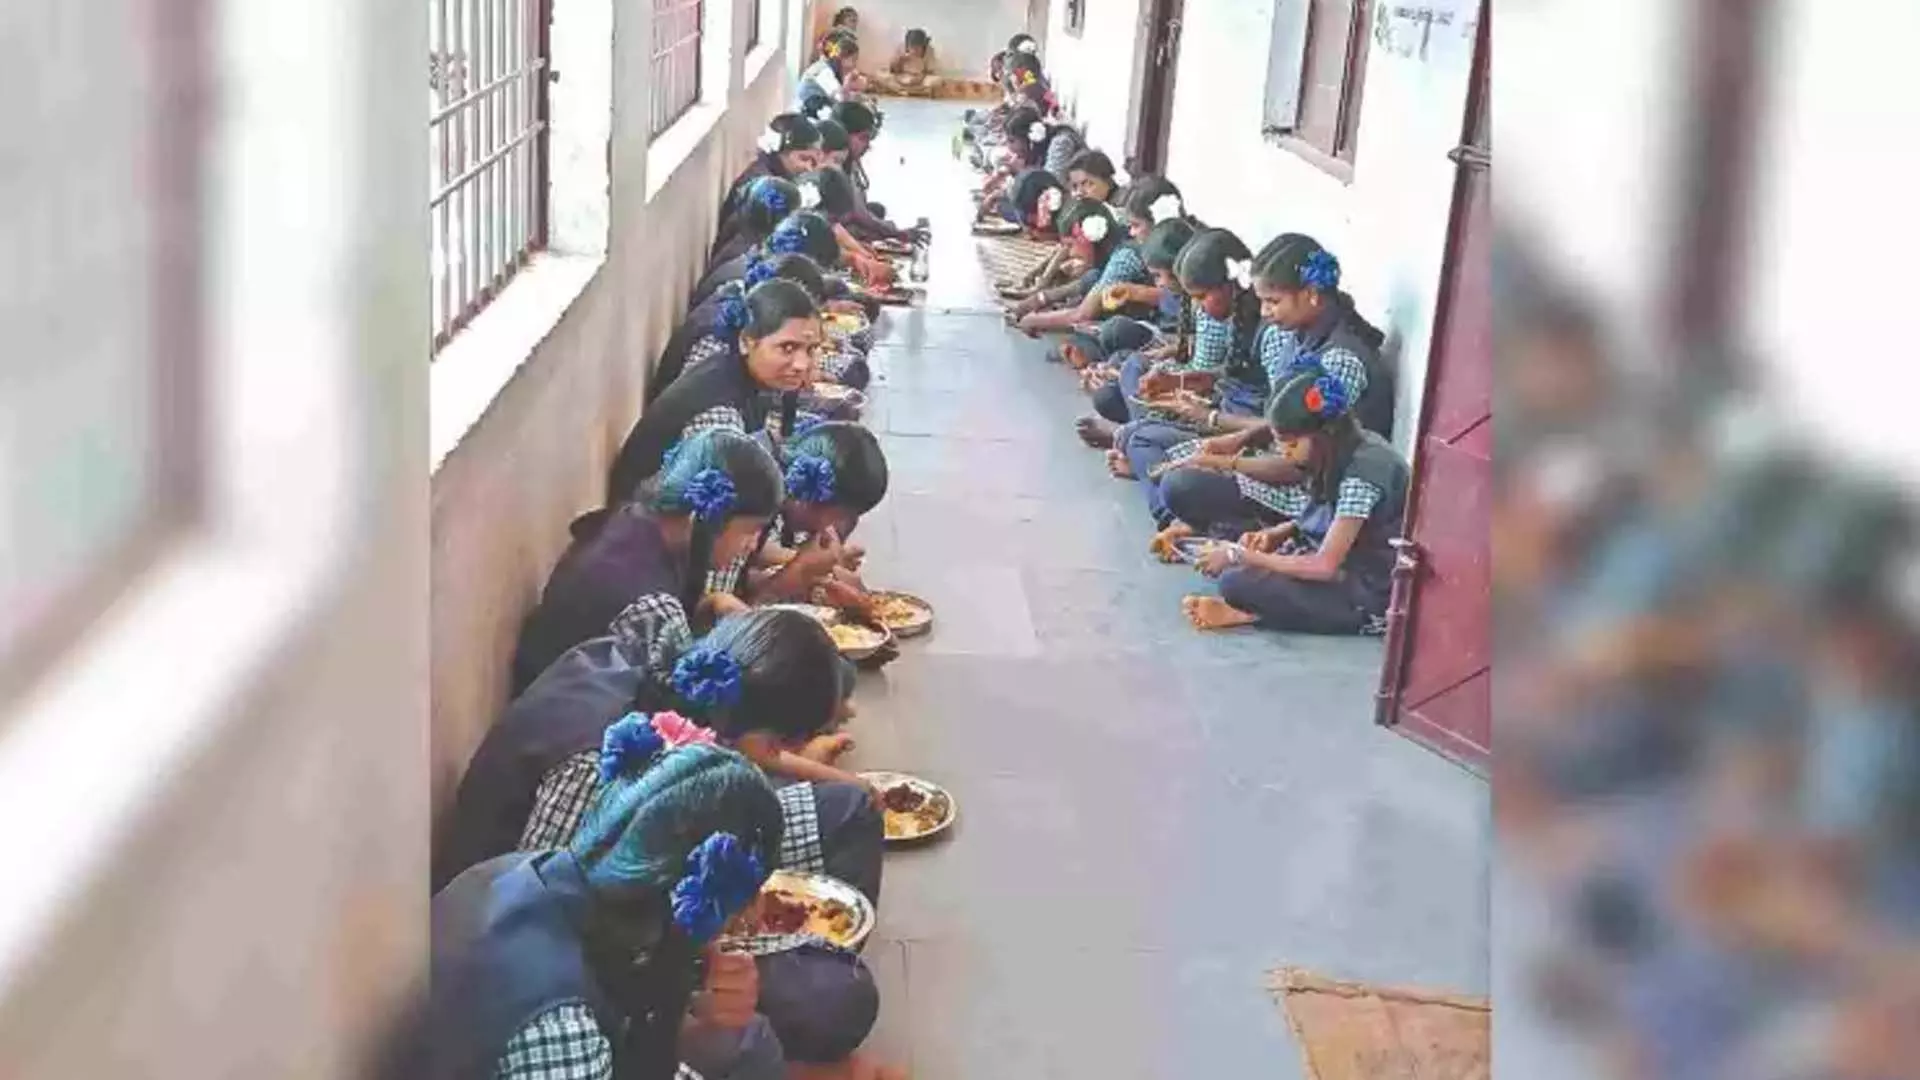 आदि द्रविड़ कल्याण छात्रावासों में खाना बनाने के लिए कोई रसोइया या बुनियादी ढांचा नहीं